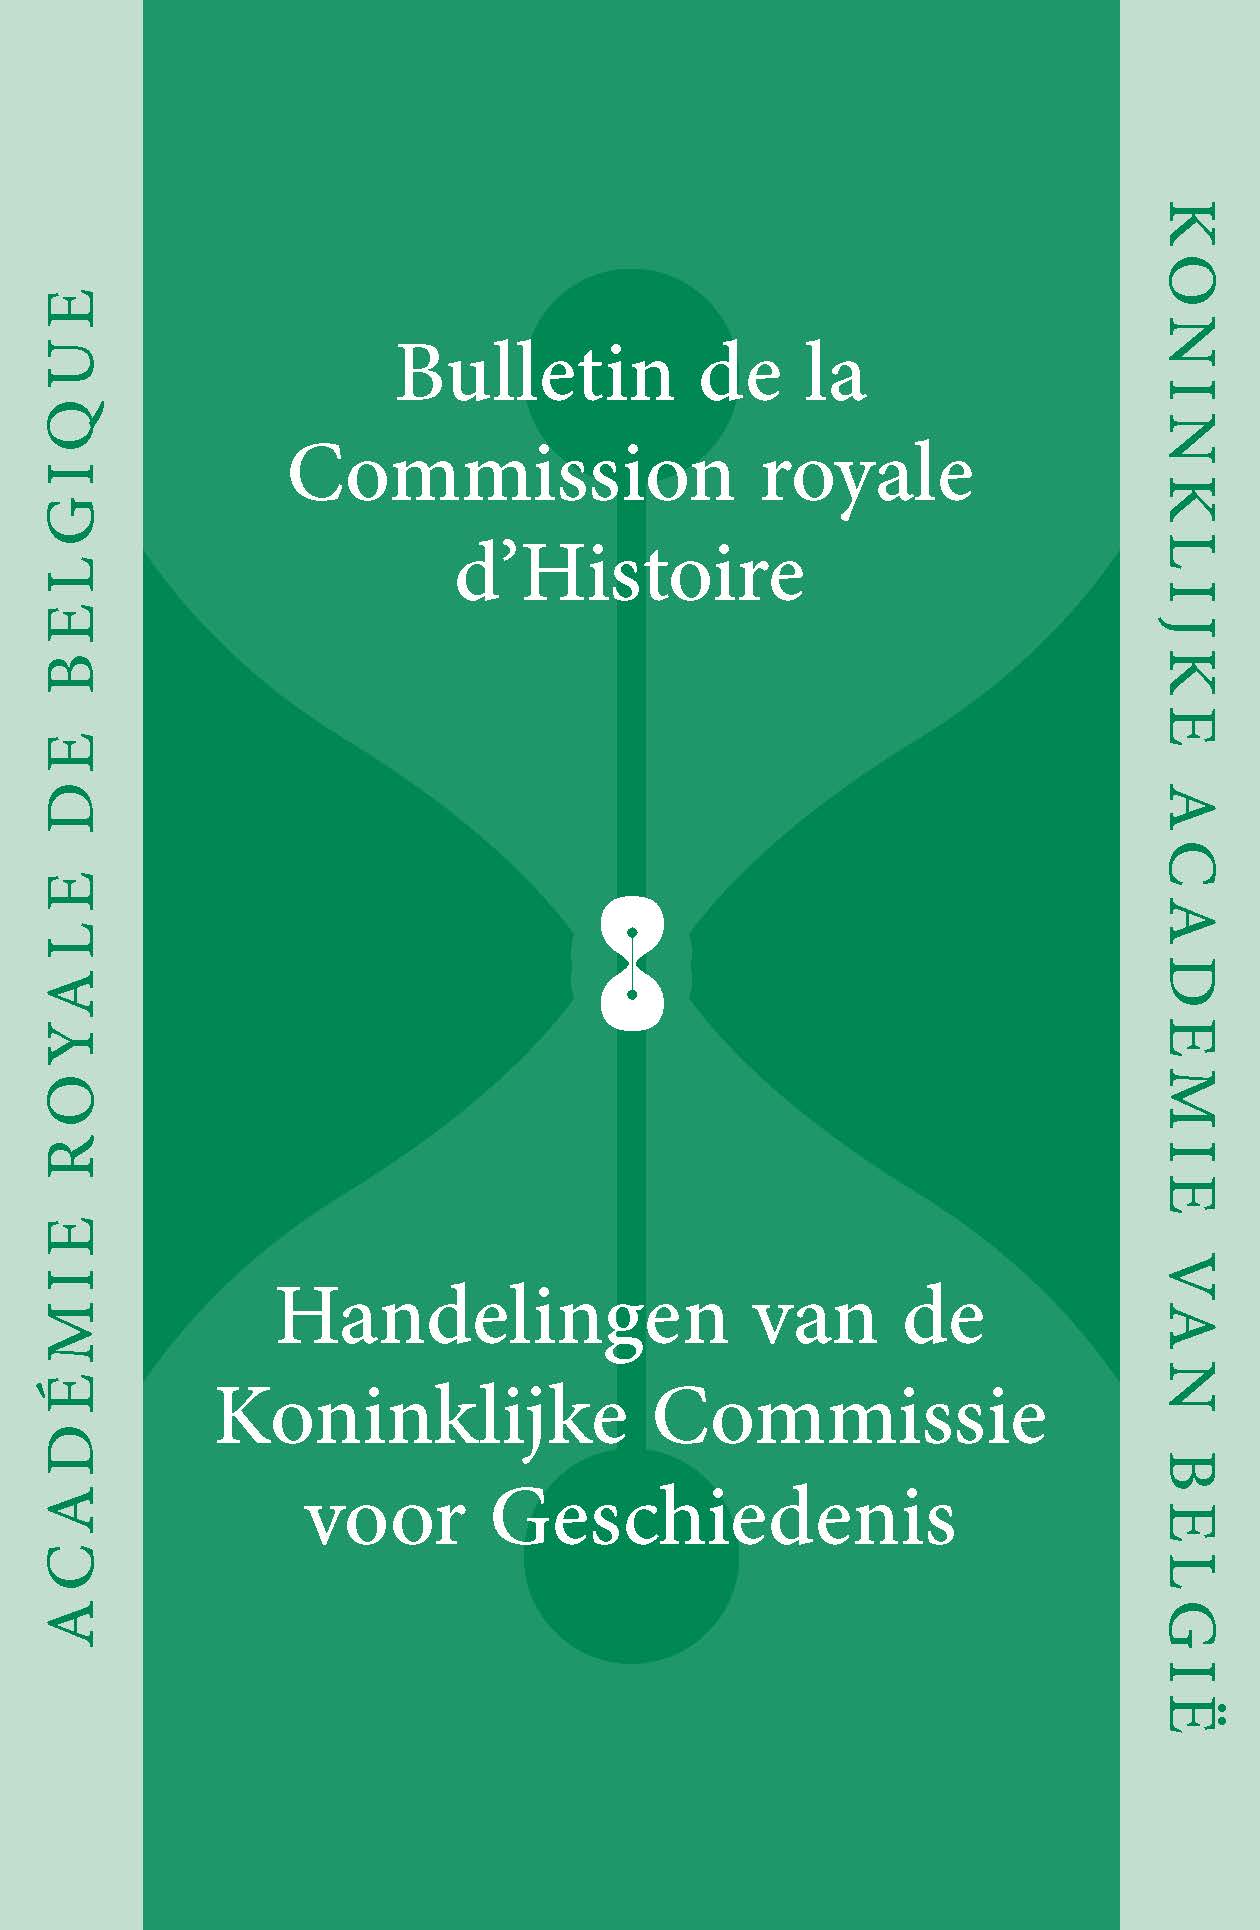 HANDELINGEN VAN DE KONINKLIJKE COMMISSIE VOOR GESCHIEDENIS/BULLETIN, vol. 179, 2013